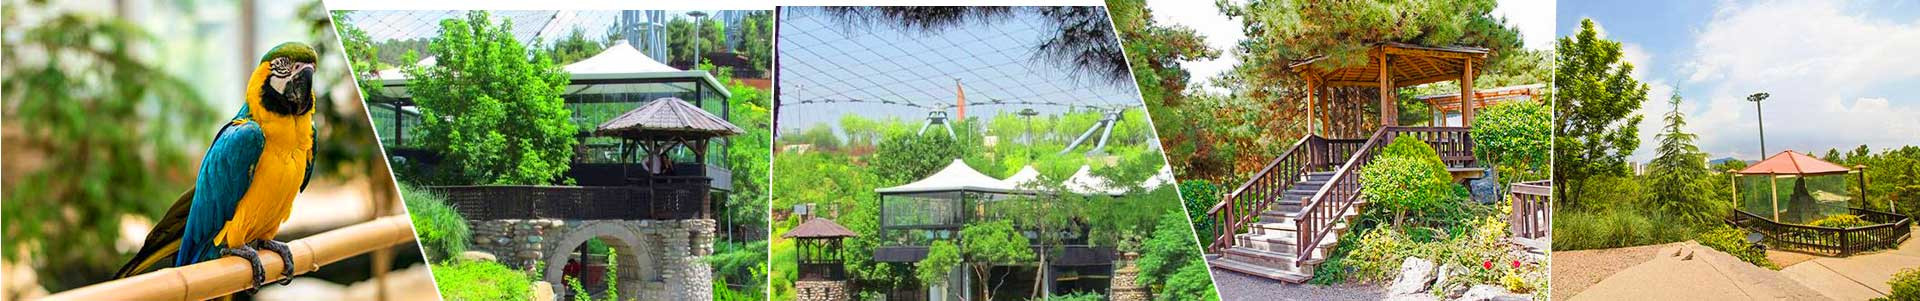 بهترین خرید باغ پرندگان تهران با بیشترین درصد تخفیف در قیمت - 40%